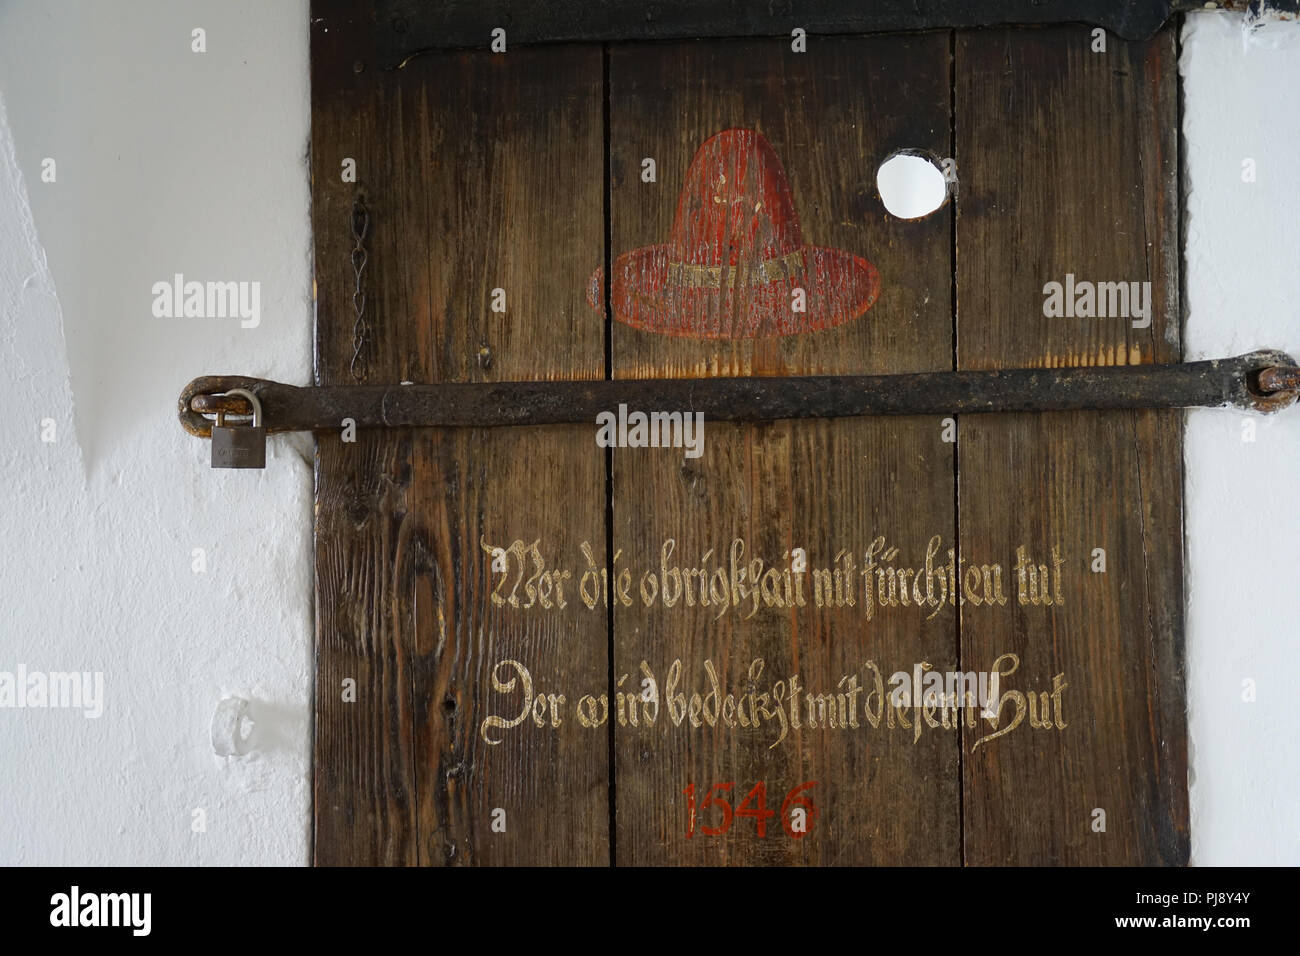 Inschrift, roter capanna, alte Holztür, ehemals Eingang zum Buergergefängnis, Altes Rathaus, Passau, Bayern Deutschland Foto Stock